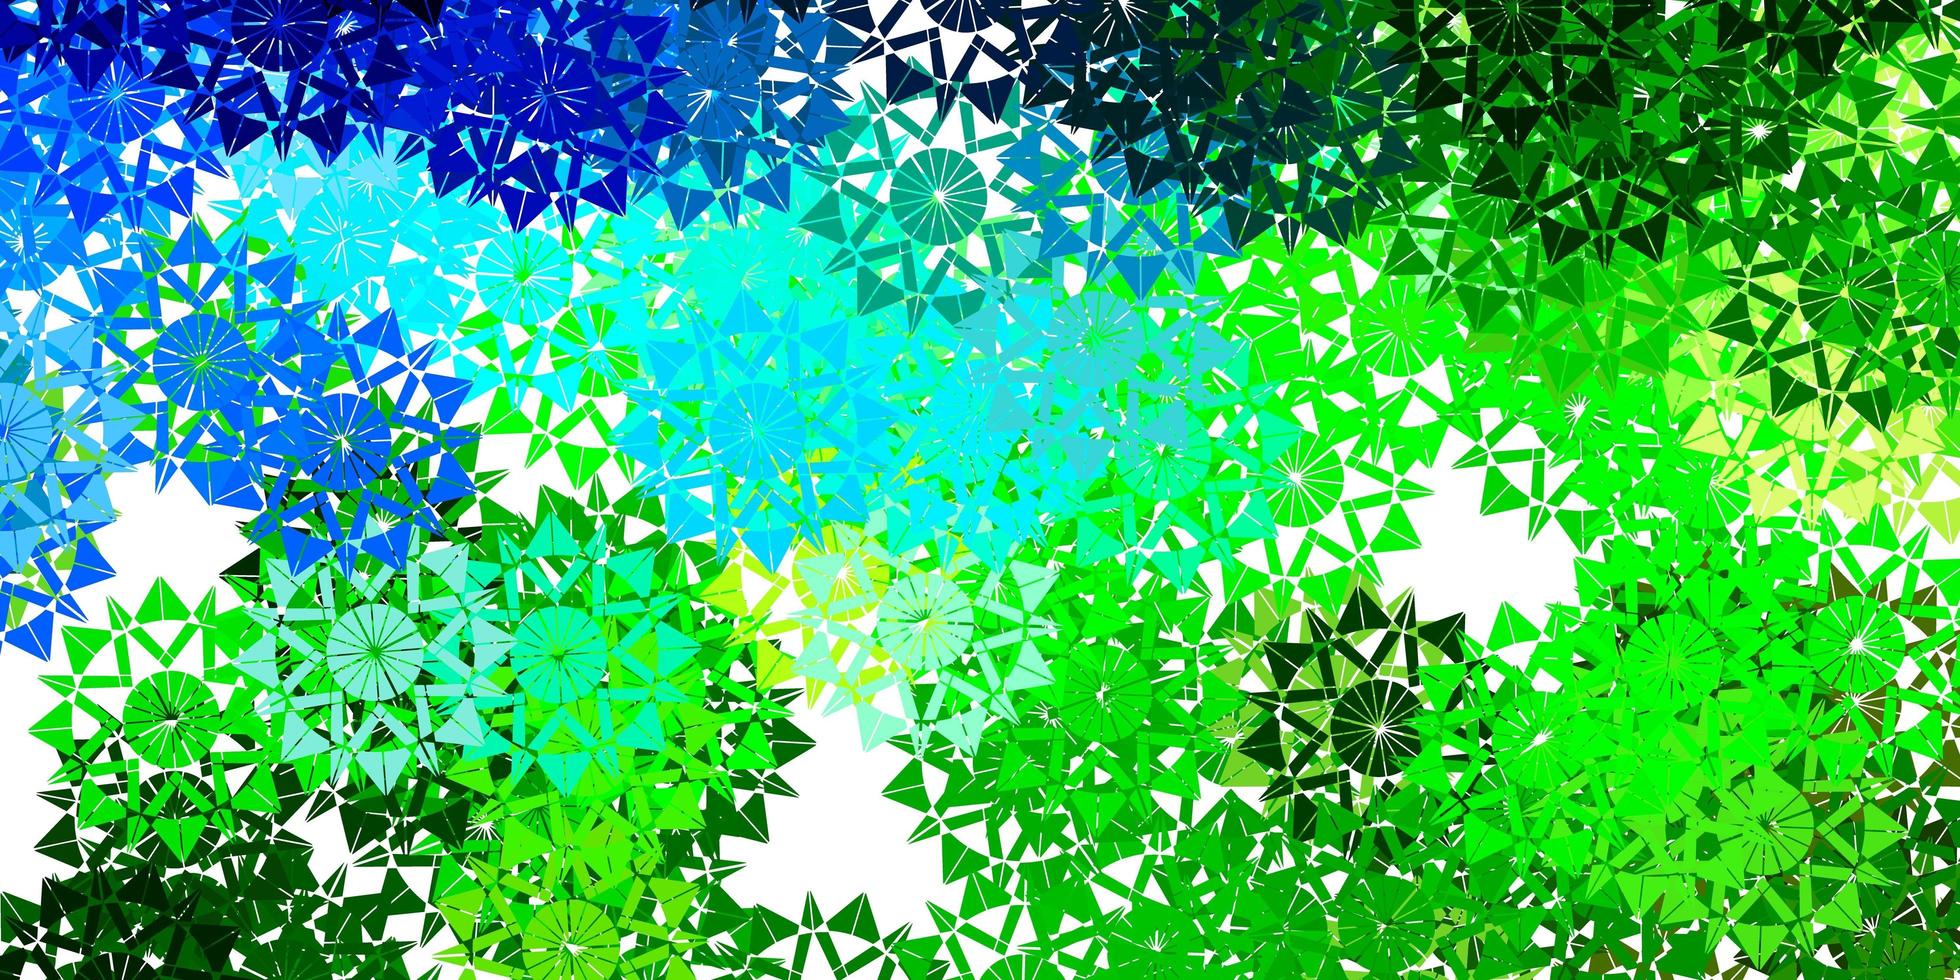 ljusblå, grön vektorbakgrund med julsnöflingor. vektor